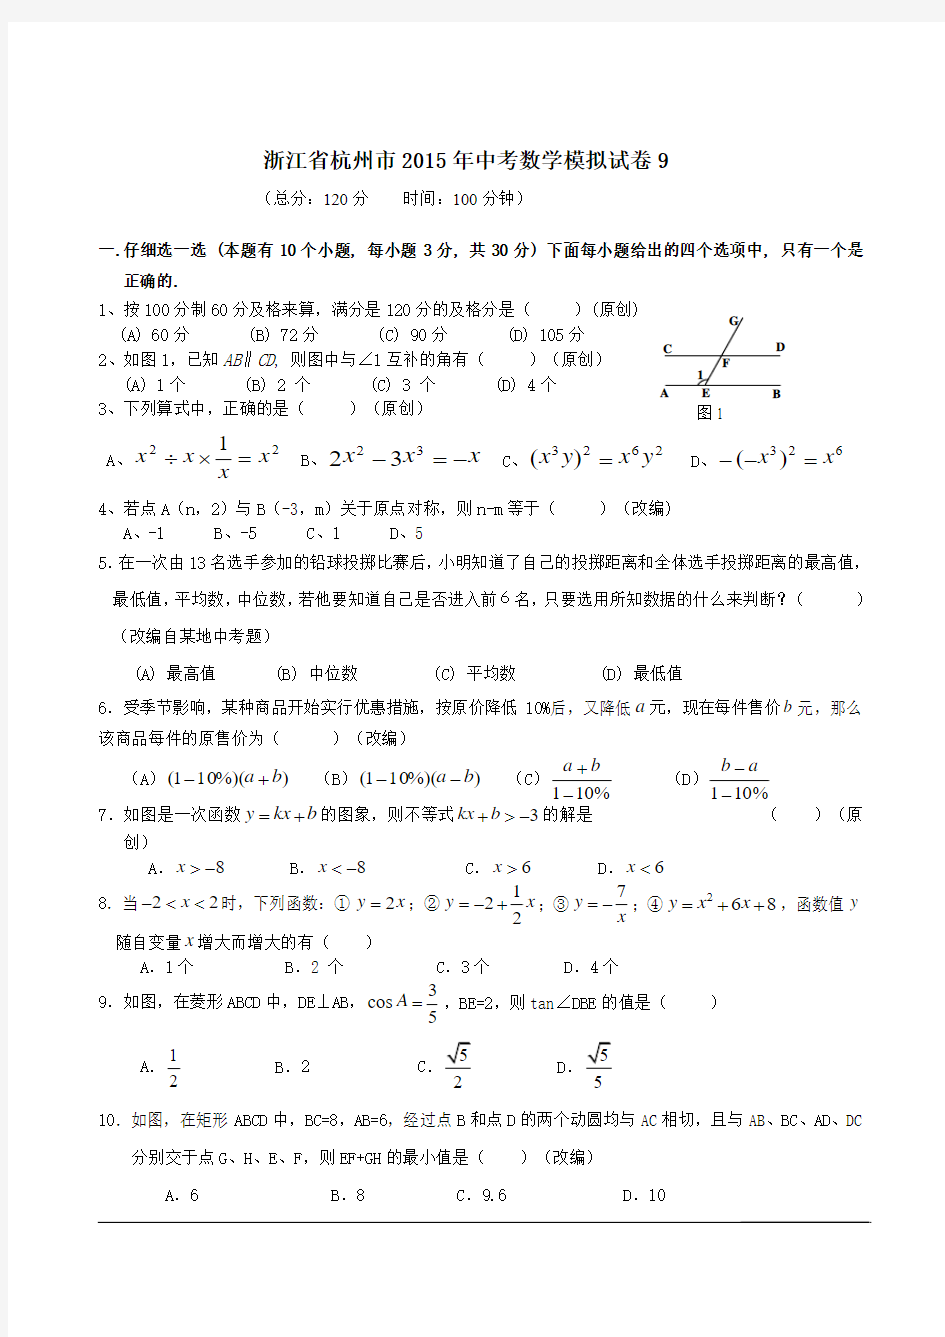 浙江省杭州市2015年中考数学模拟试卷9(含详细解答)